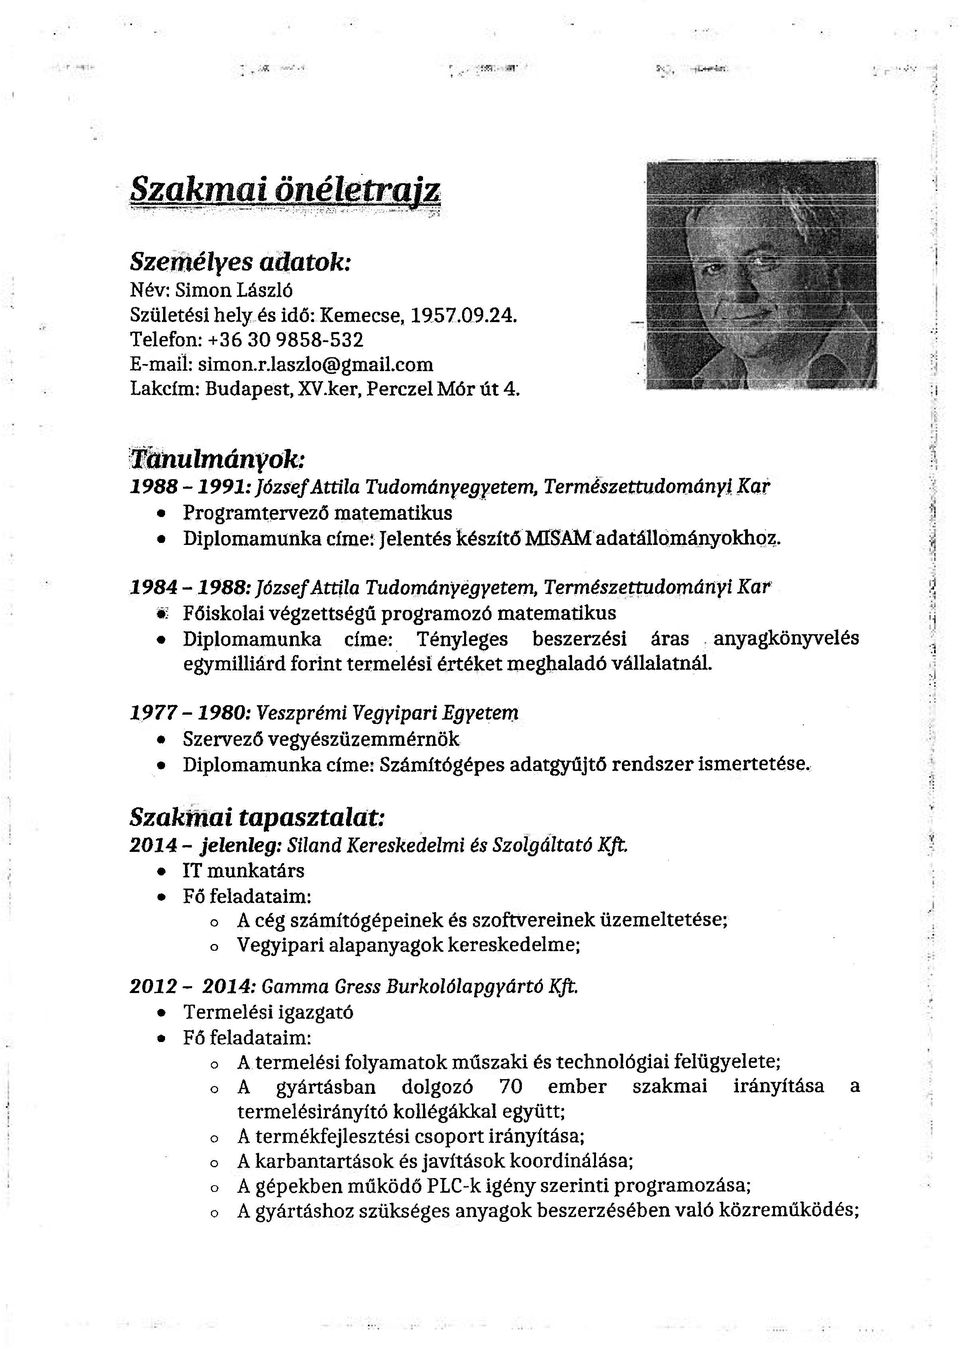 1984-1988: József Attila Tudományegyetem, Természettudományi Kar Főiskolai végzettségű programozó matematikus Diplomamunka címe: Tényleges beszerzési áras anyagkönyvelés egymilliárd forint termelési